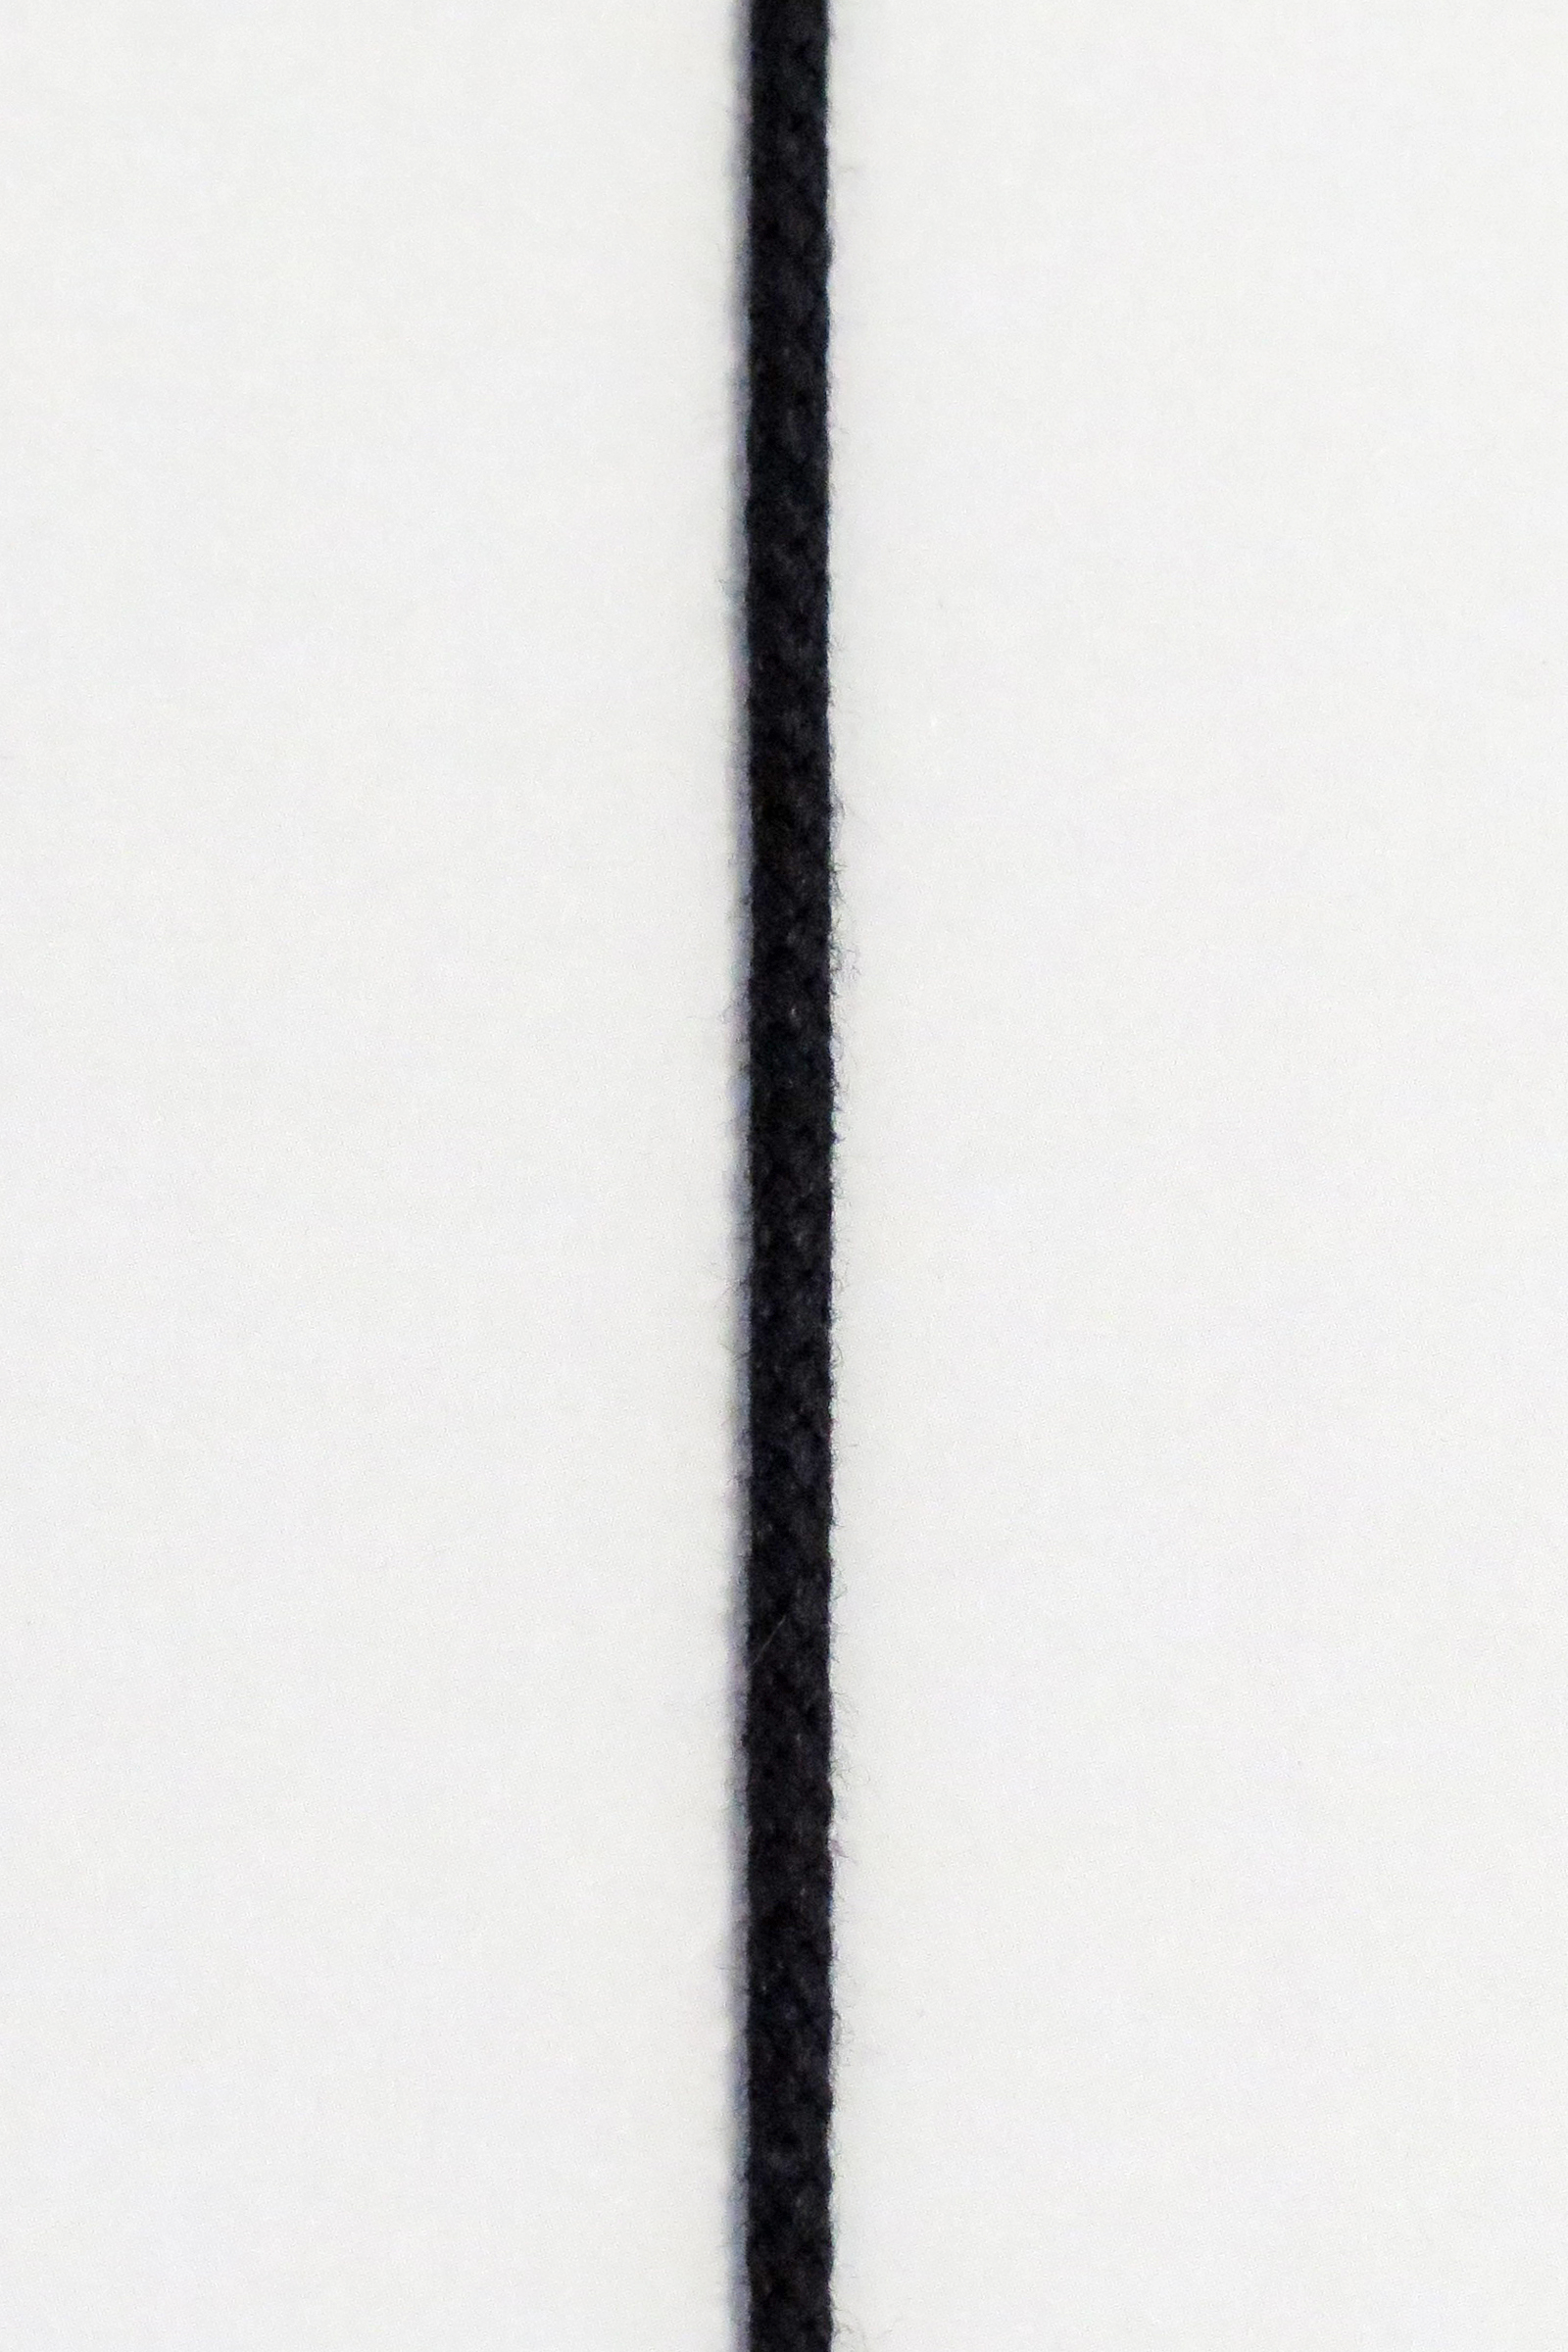 Anoraksnor Sort 3 mm